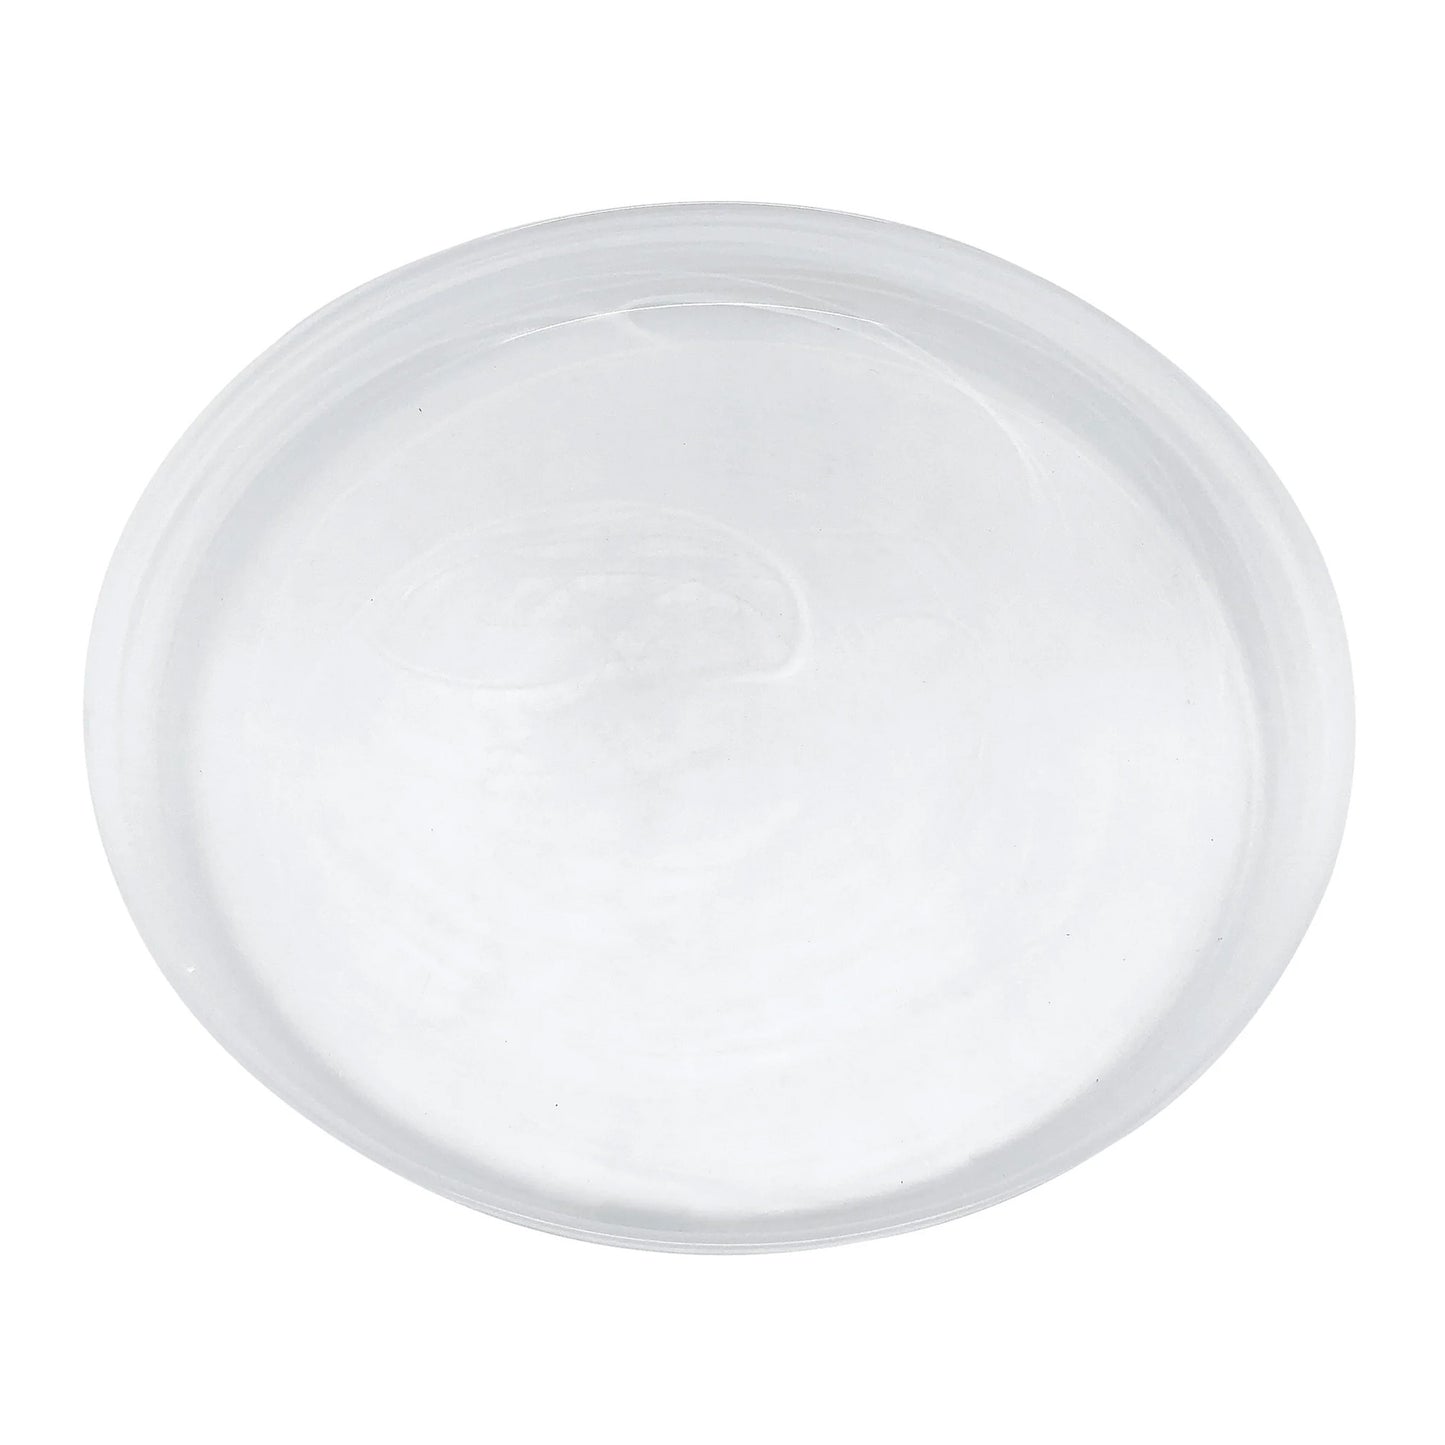 Allabaster White small plate